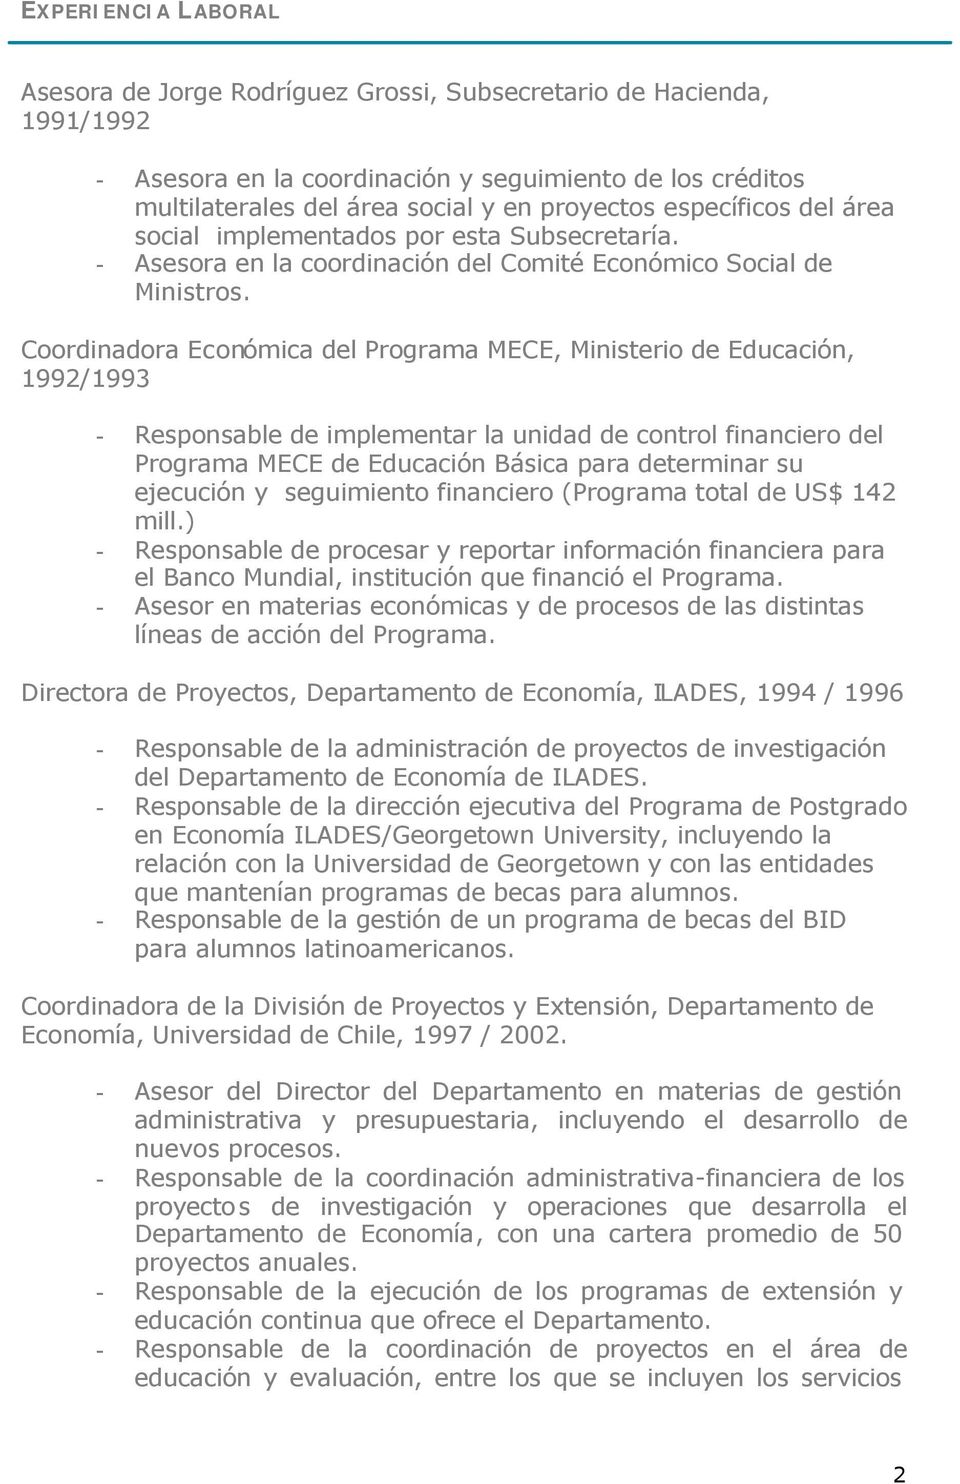 Coordinadora Económica del Programa MECE, Ministerio de Educación, 1992/1993 - Responsable de implementar la unidad de control financiero del Programa MECE de Educación Básica para determinar su